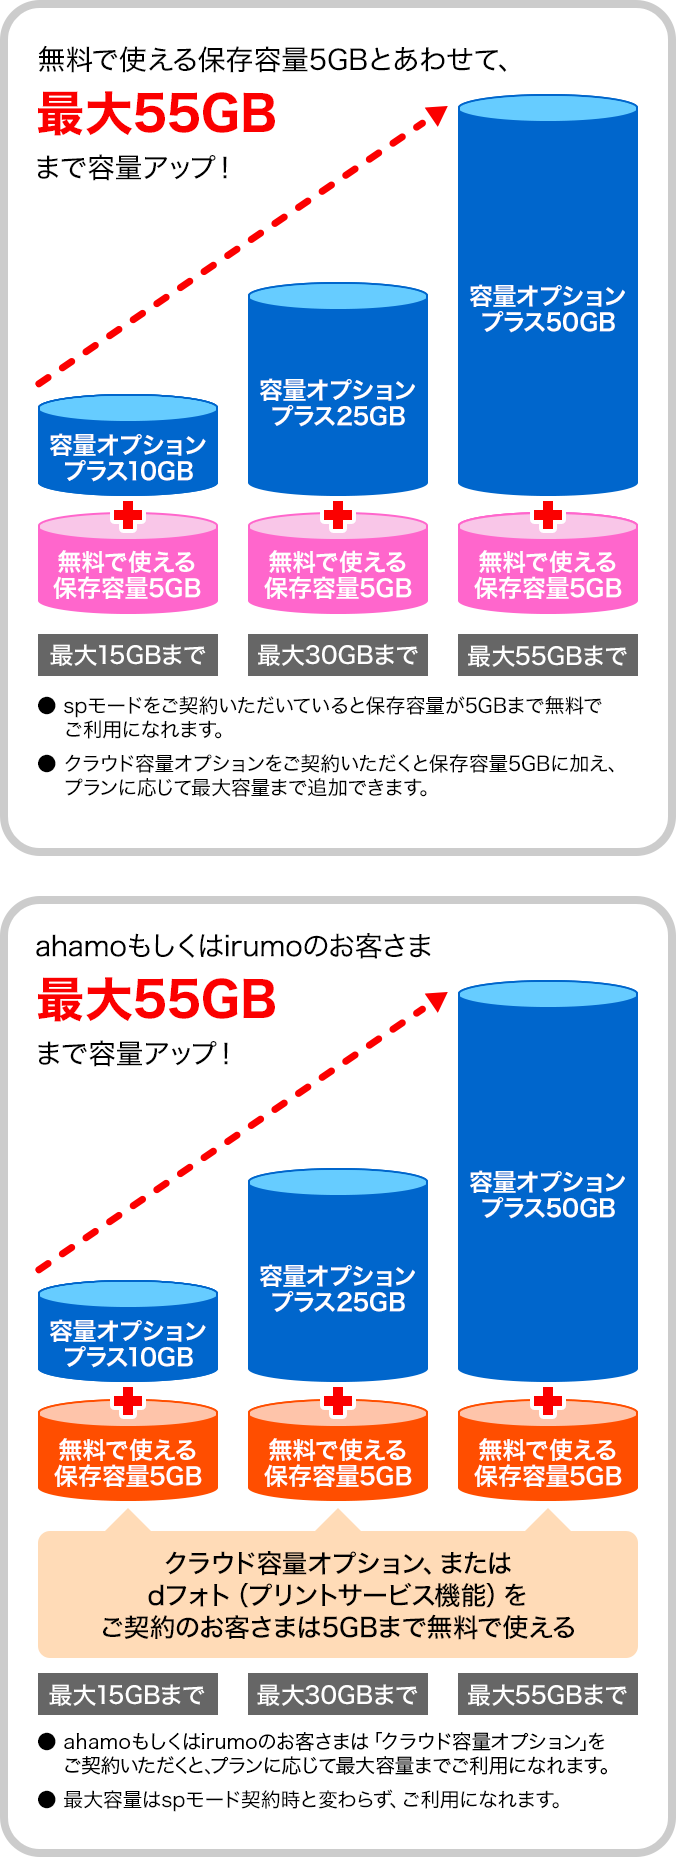 無料で使える保存容量5GBとあわせて、最大55GBまで容量アップ！・spモードをご契約いただいていると保存容量が5GBまで無料でご利用になれます。・クラウド容量オプションをご契約いただくと保存容量5GBに加え、プランに応じて最大容量まで追加できます。ahamoもしくはirumoのお客さまは、最大55GBまで容量アップ！クラウド容量オプション、またはdフォト（プリントサービス機能）をご契約のお客さまは5GBまで無料で使える・ahamoもしくはirumoのお客さまはクラウド容量オプションをご契約いただくと、プランに応じて最大容量までご利用になれます。・最大容量はspモード契約時と変わらず、ご利用になれます。